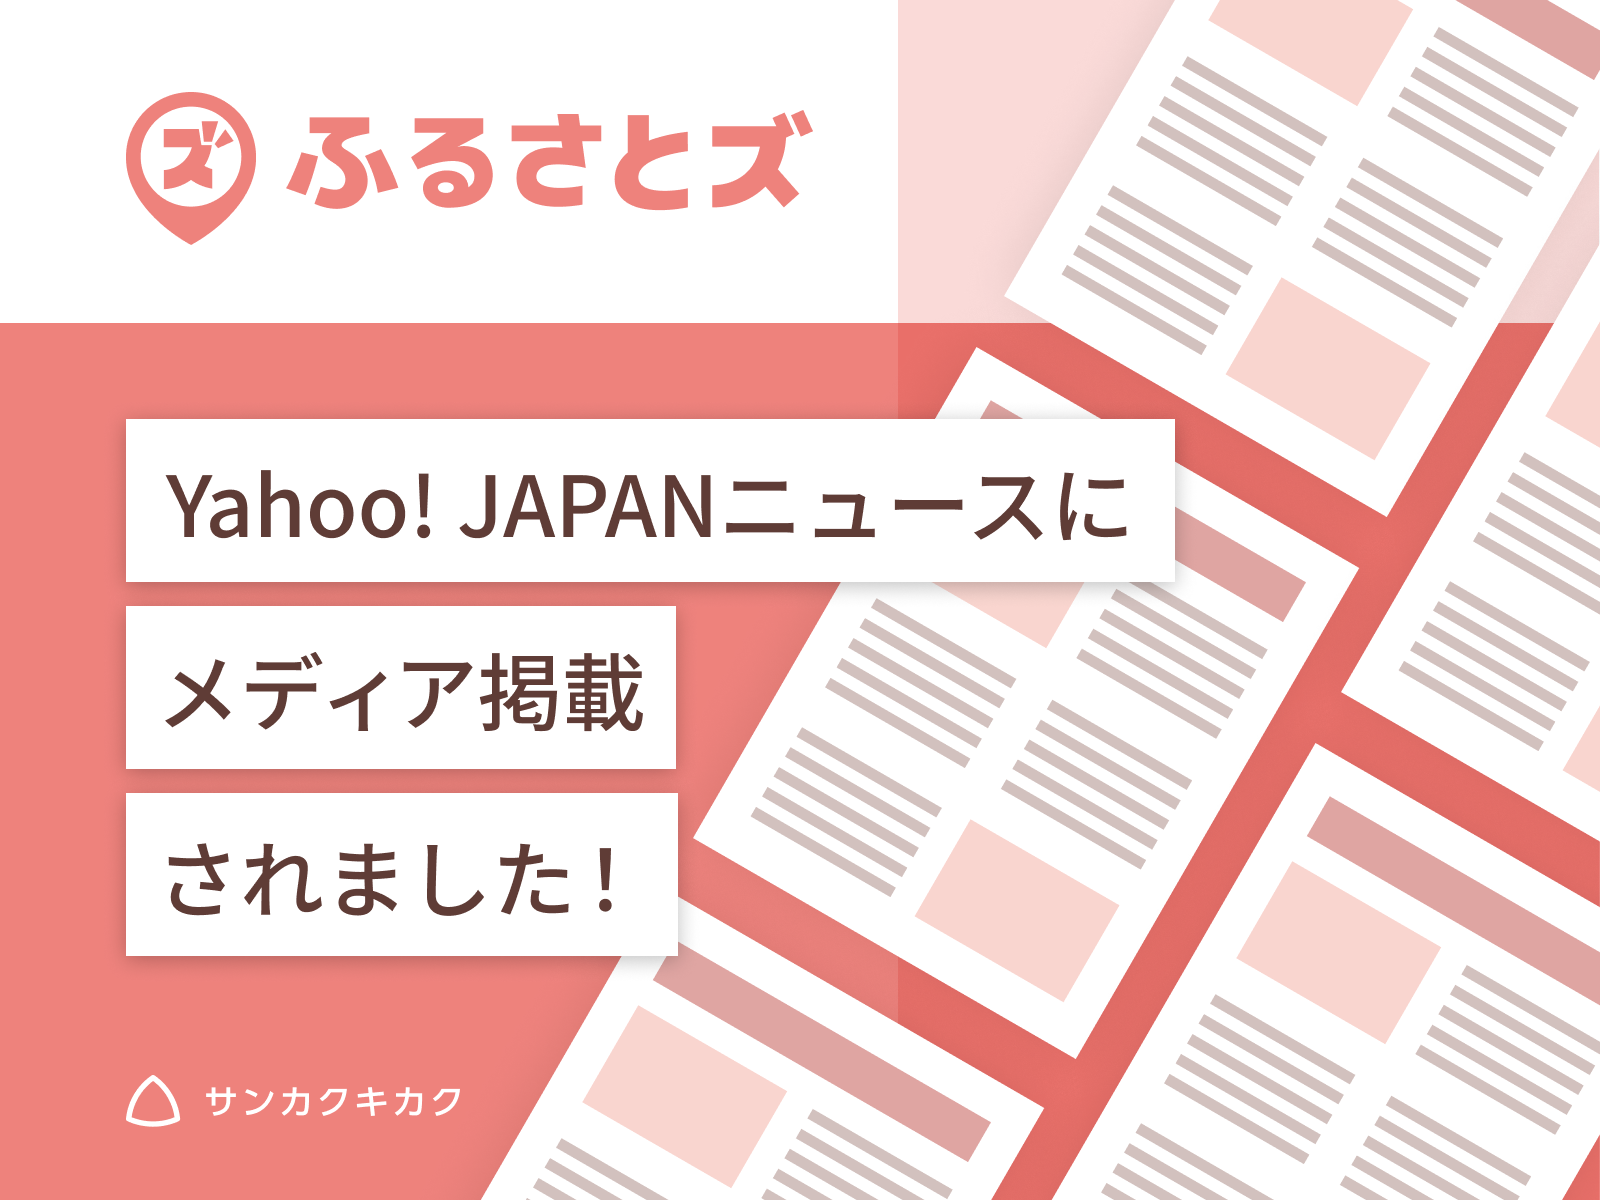 ふるさとズ｜静岡県清水町の飲食店でのふるさと納税全国初導入の様子がYahoo! JAPANニュースに掲載されました。